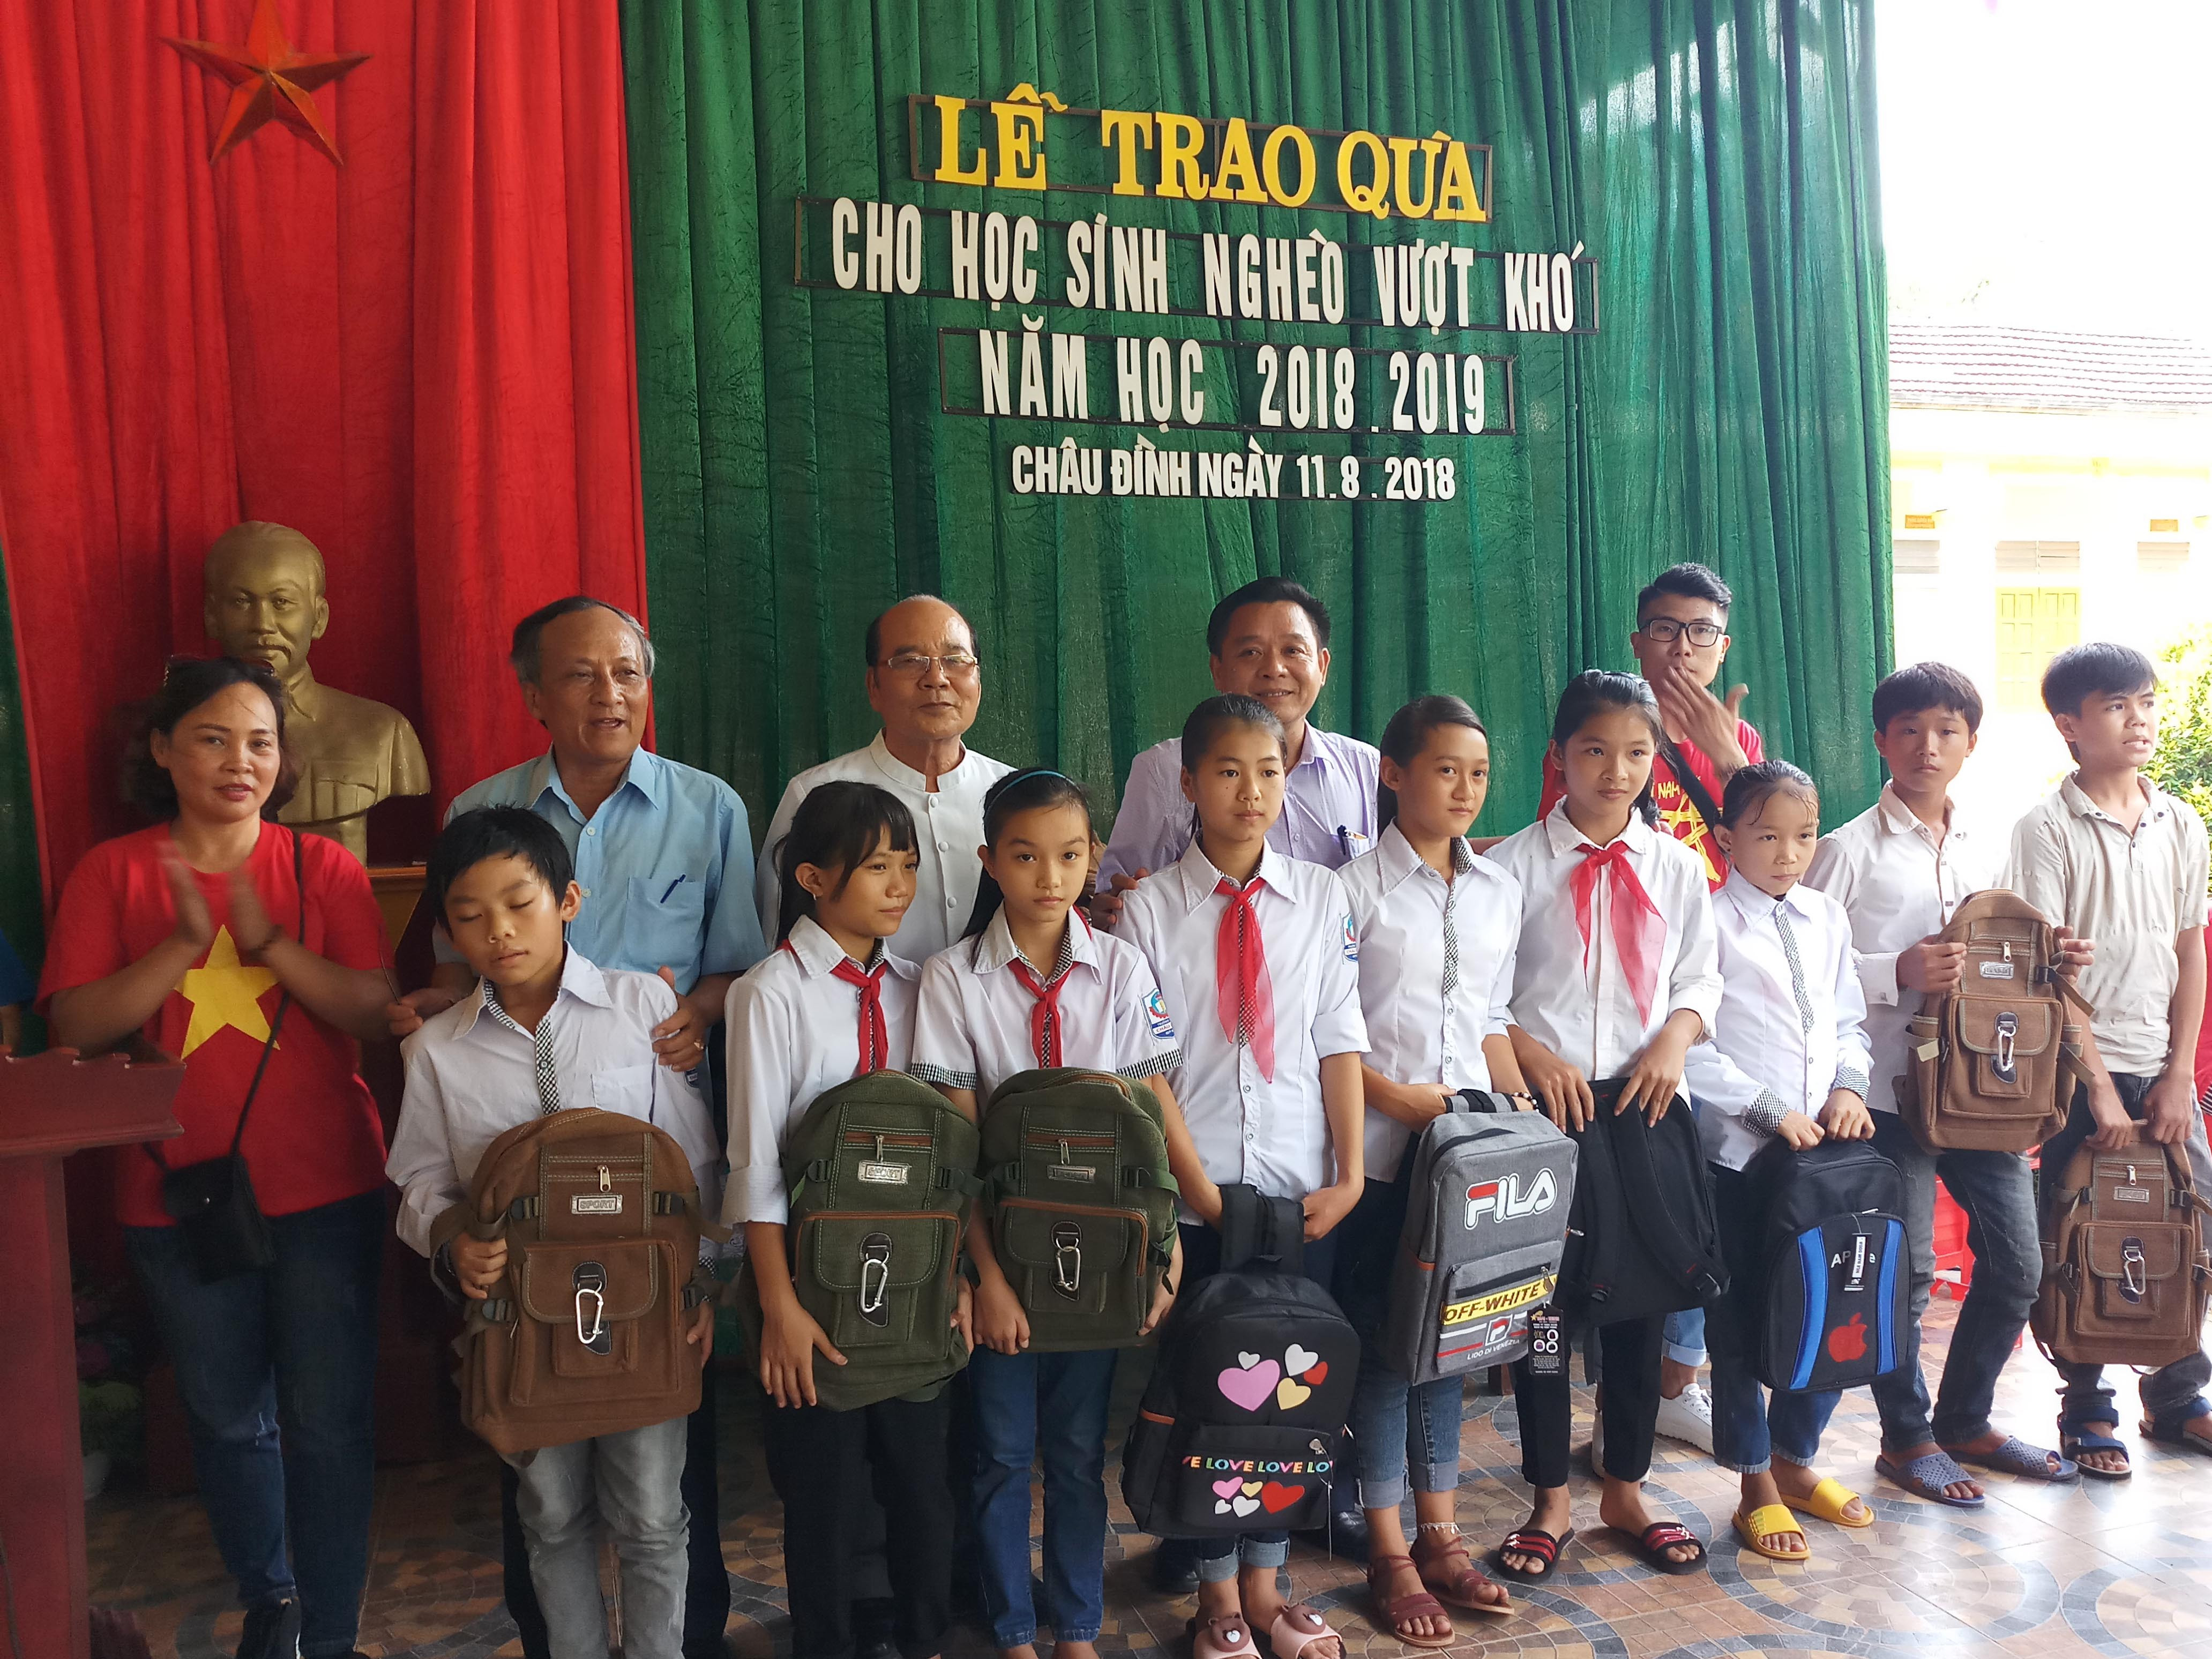 Đoàn tặng 100 suất cho các em học sinh trường THCS Châu Đình. Ảnh: Thanh Hợp